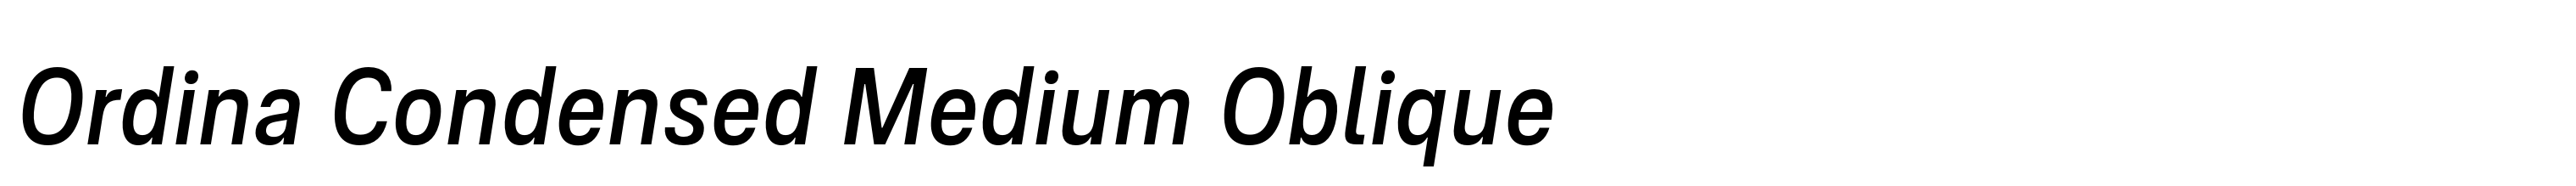 Ordina Condensed Medium Oblique